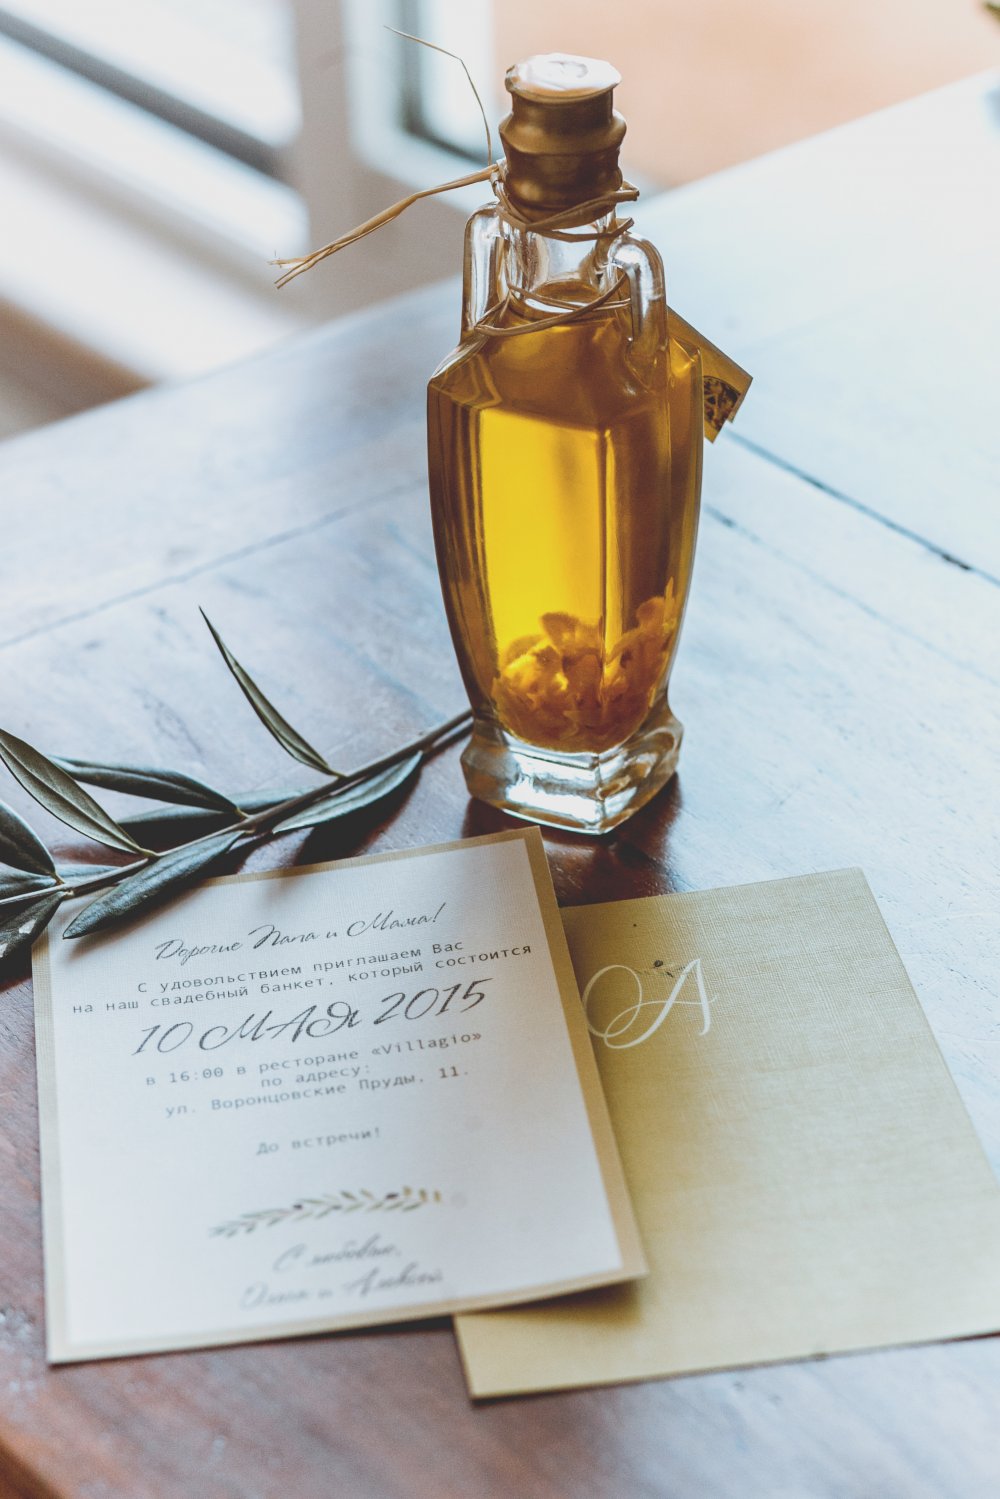 Флакон оливкового масла в подарок и приглашение на свадьбу